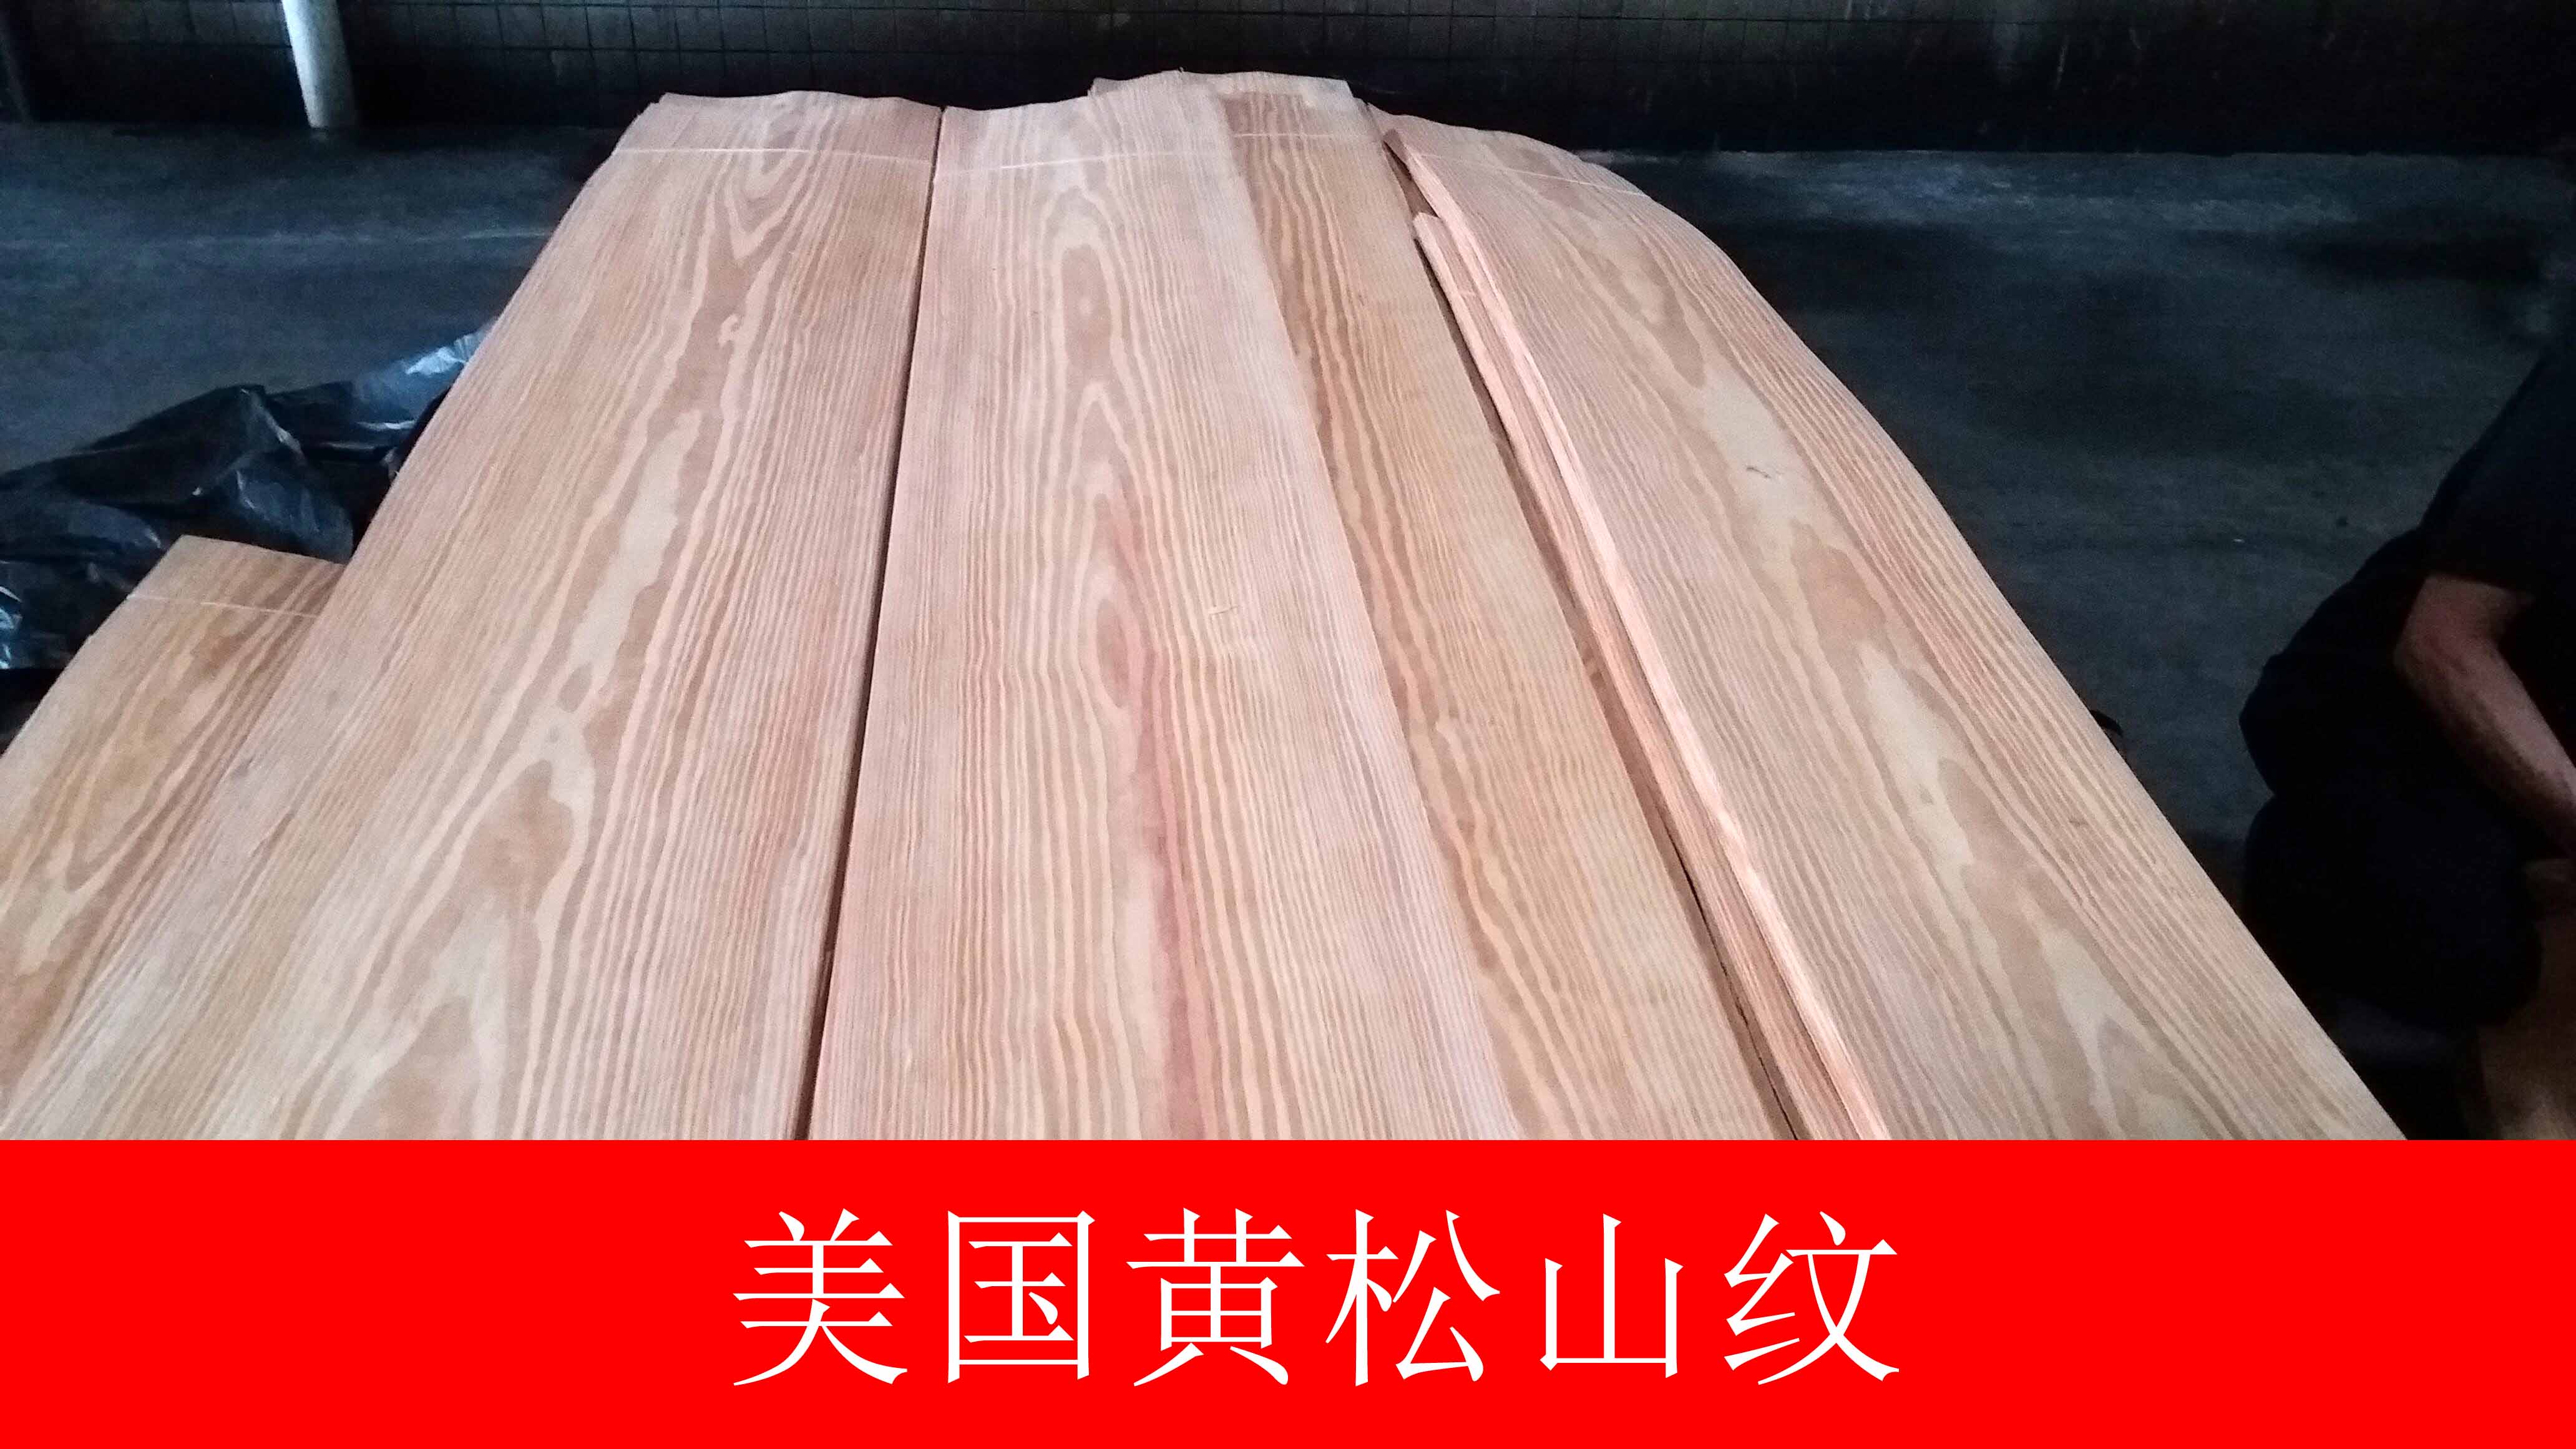 供应用于制作高档家具的广东枫木木皮批发商 枫木地板优点  枫木木皮哪家好